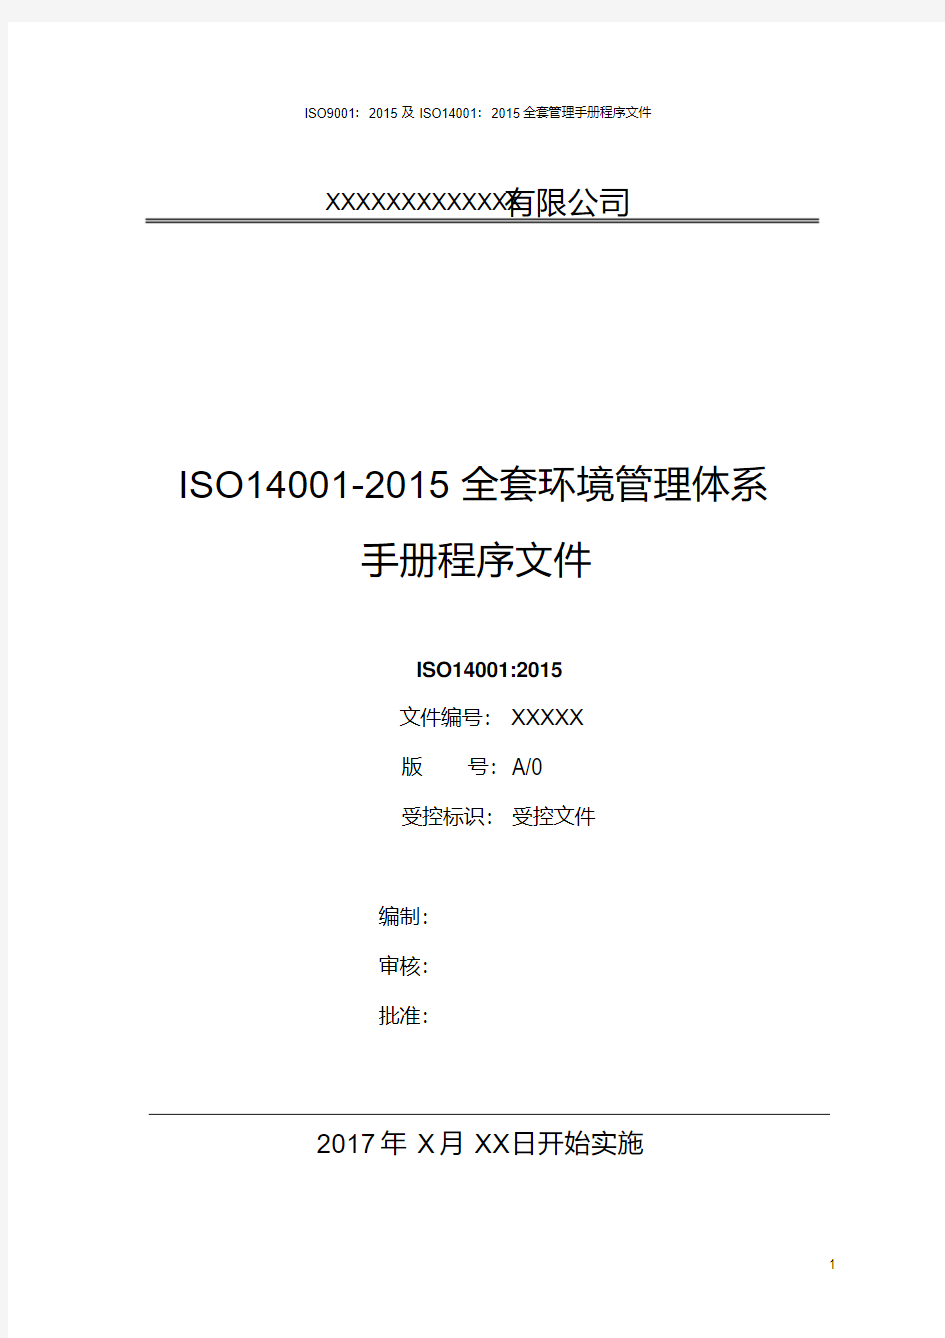 ISO14001-2015全套环境管理体系手册程序文件